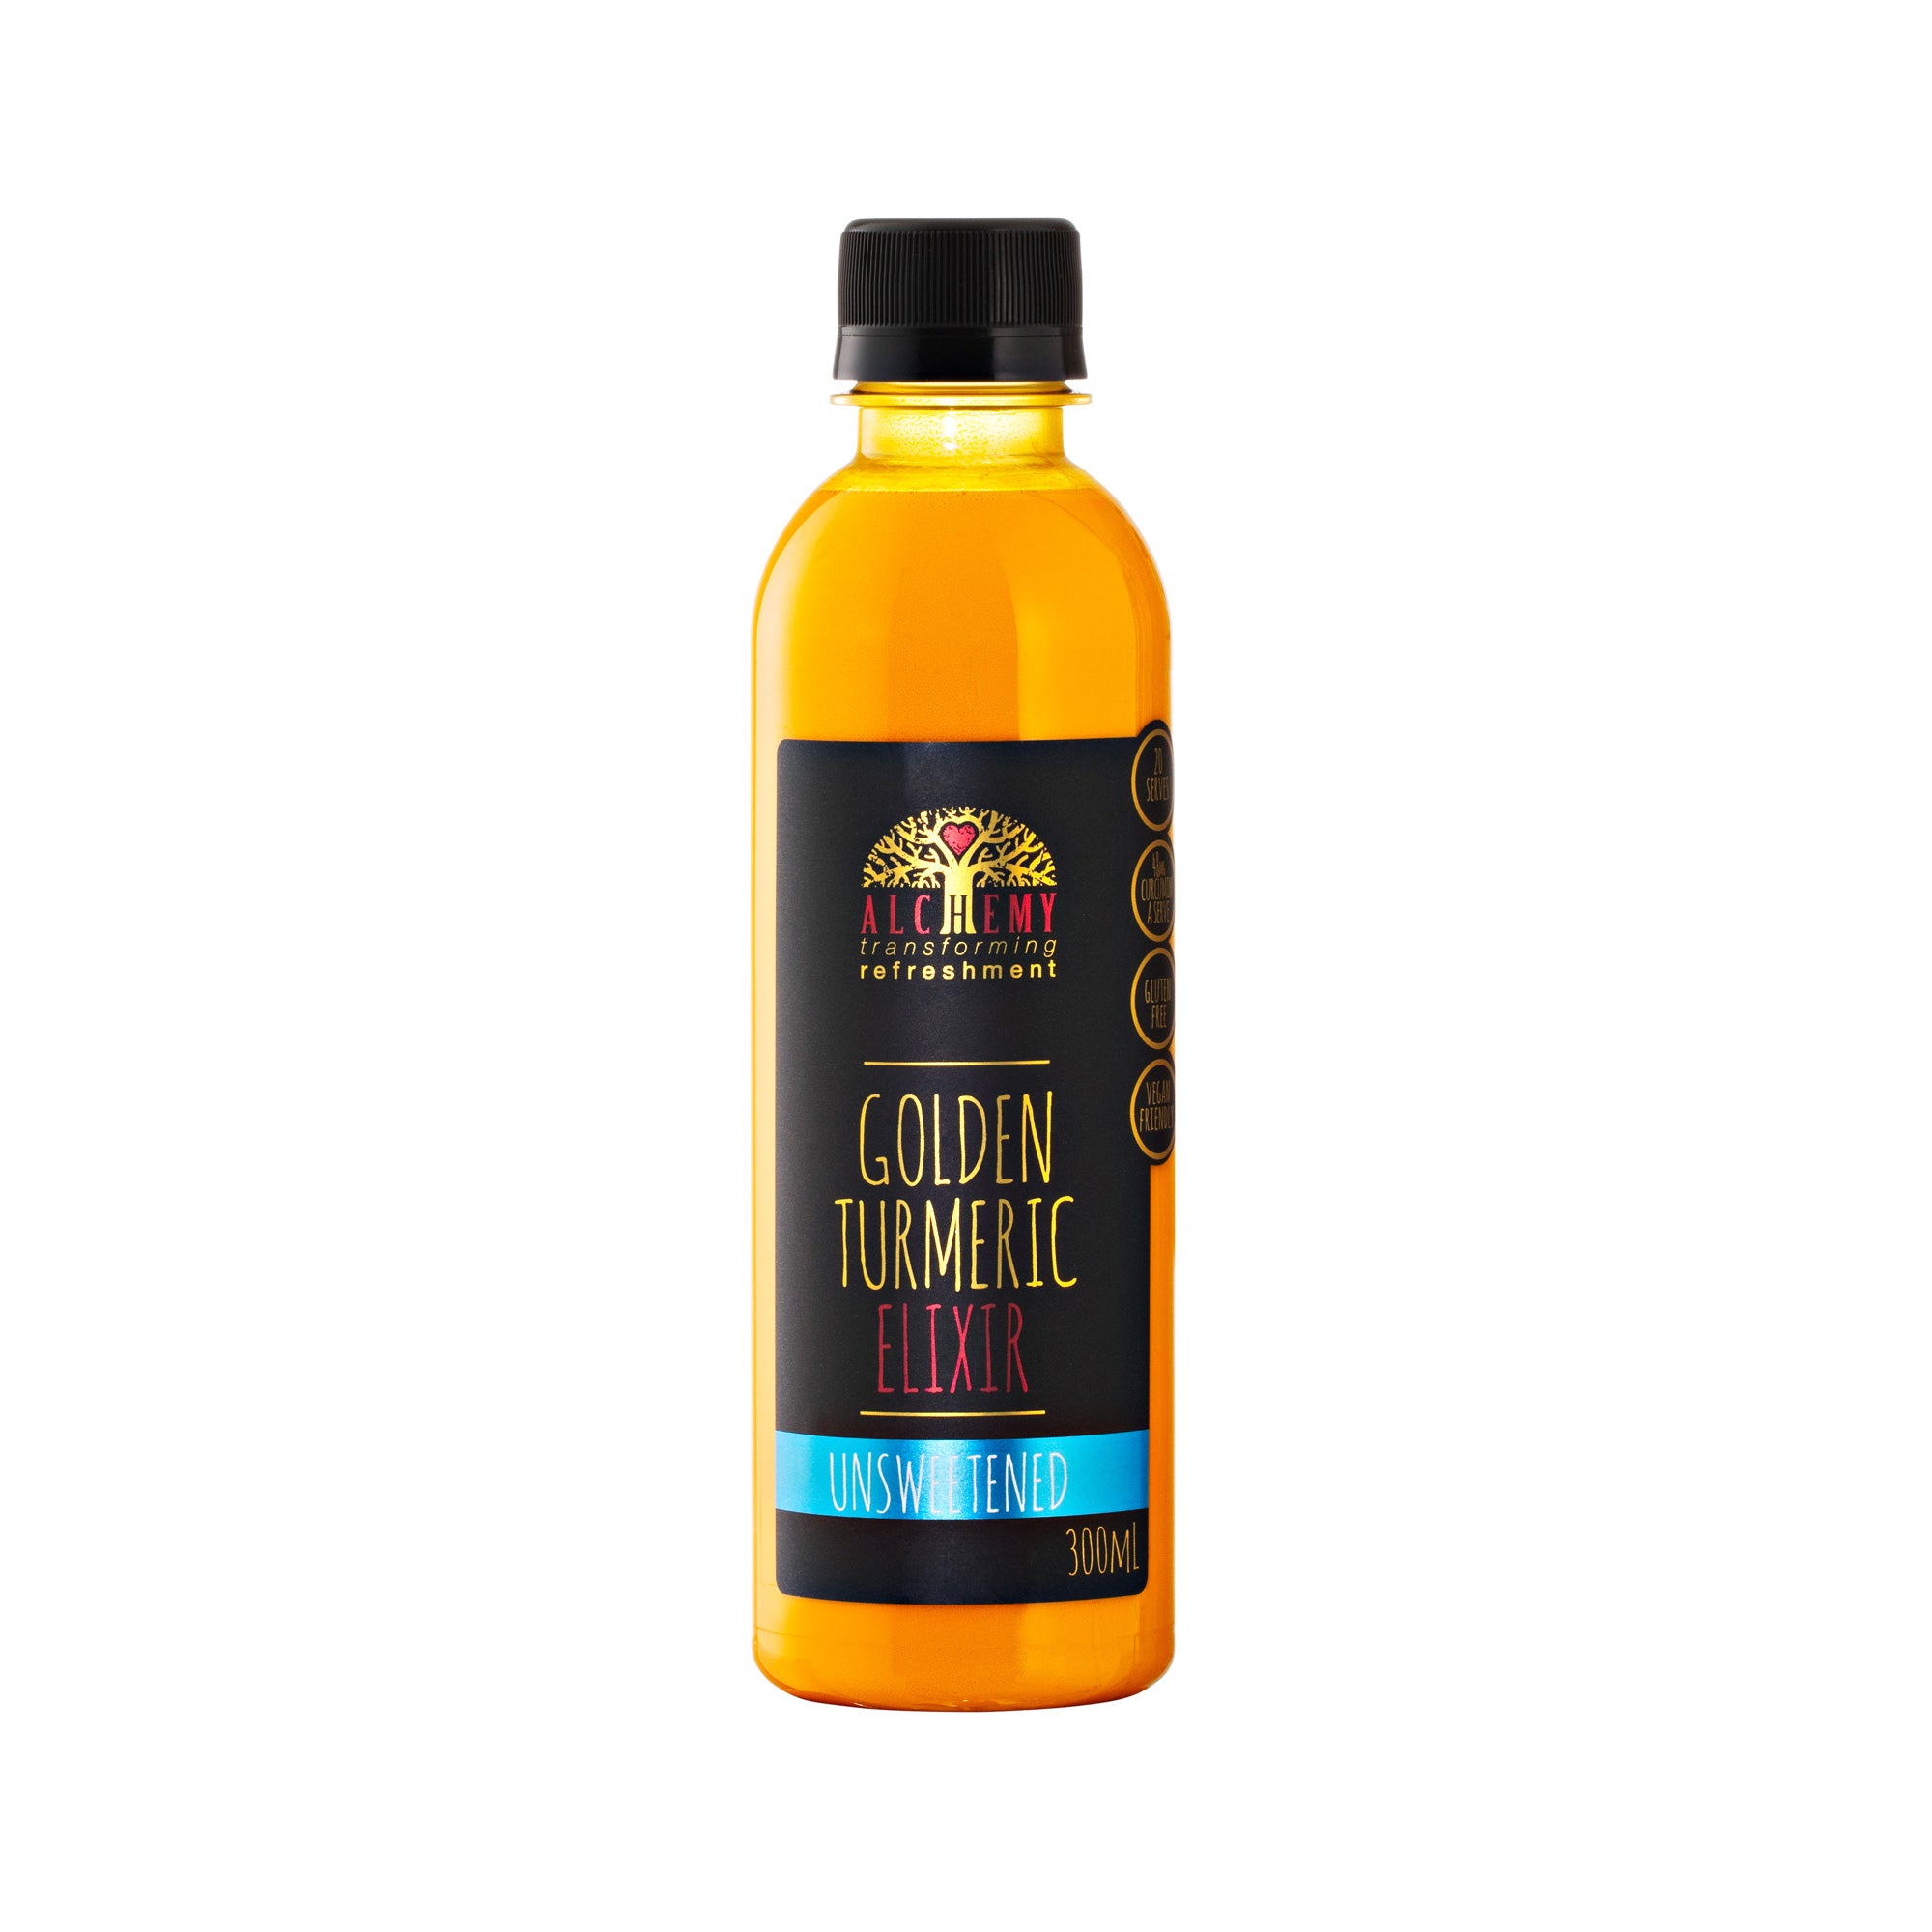 Alchemy Unsweetened Golden Turmeric Elixir